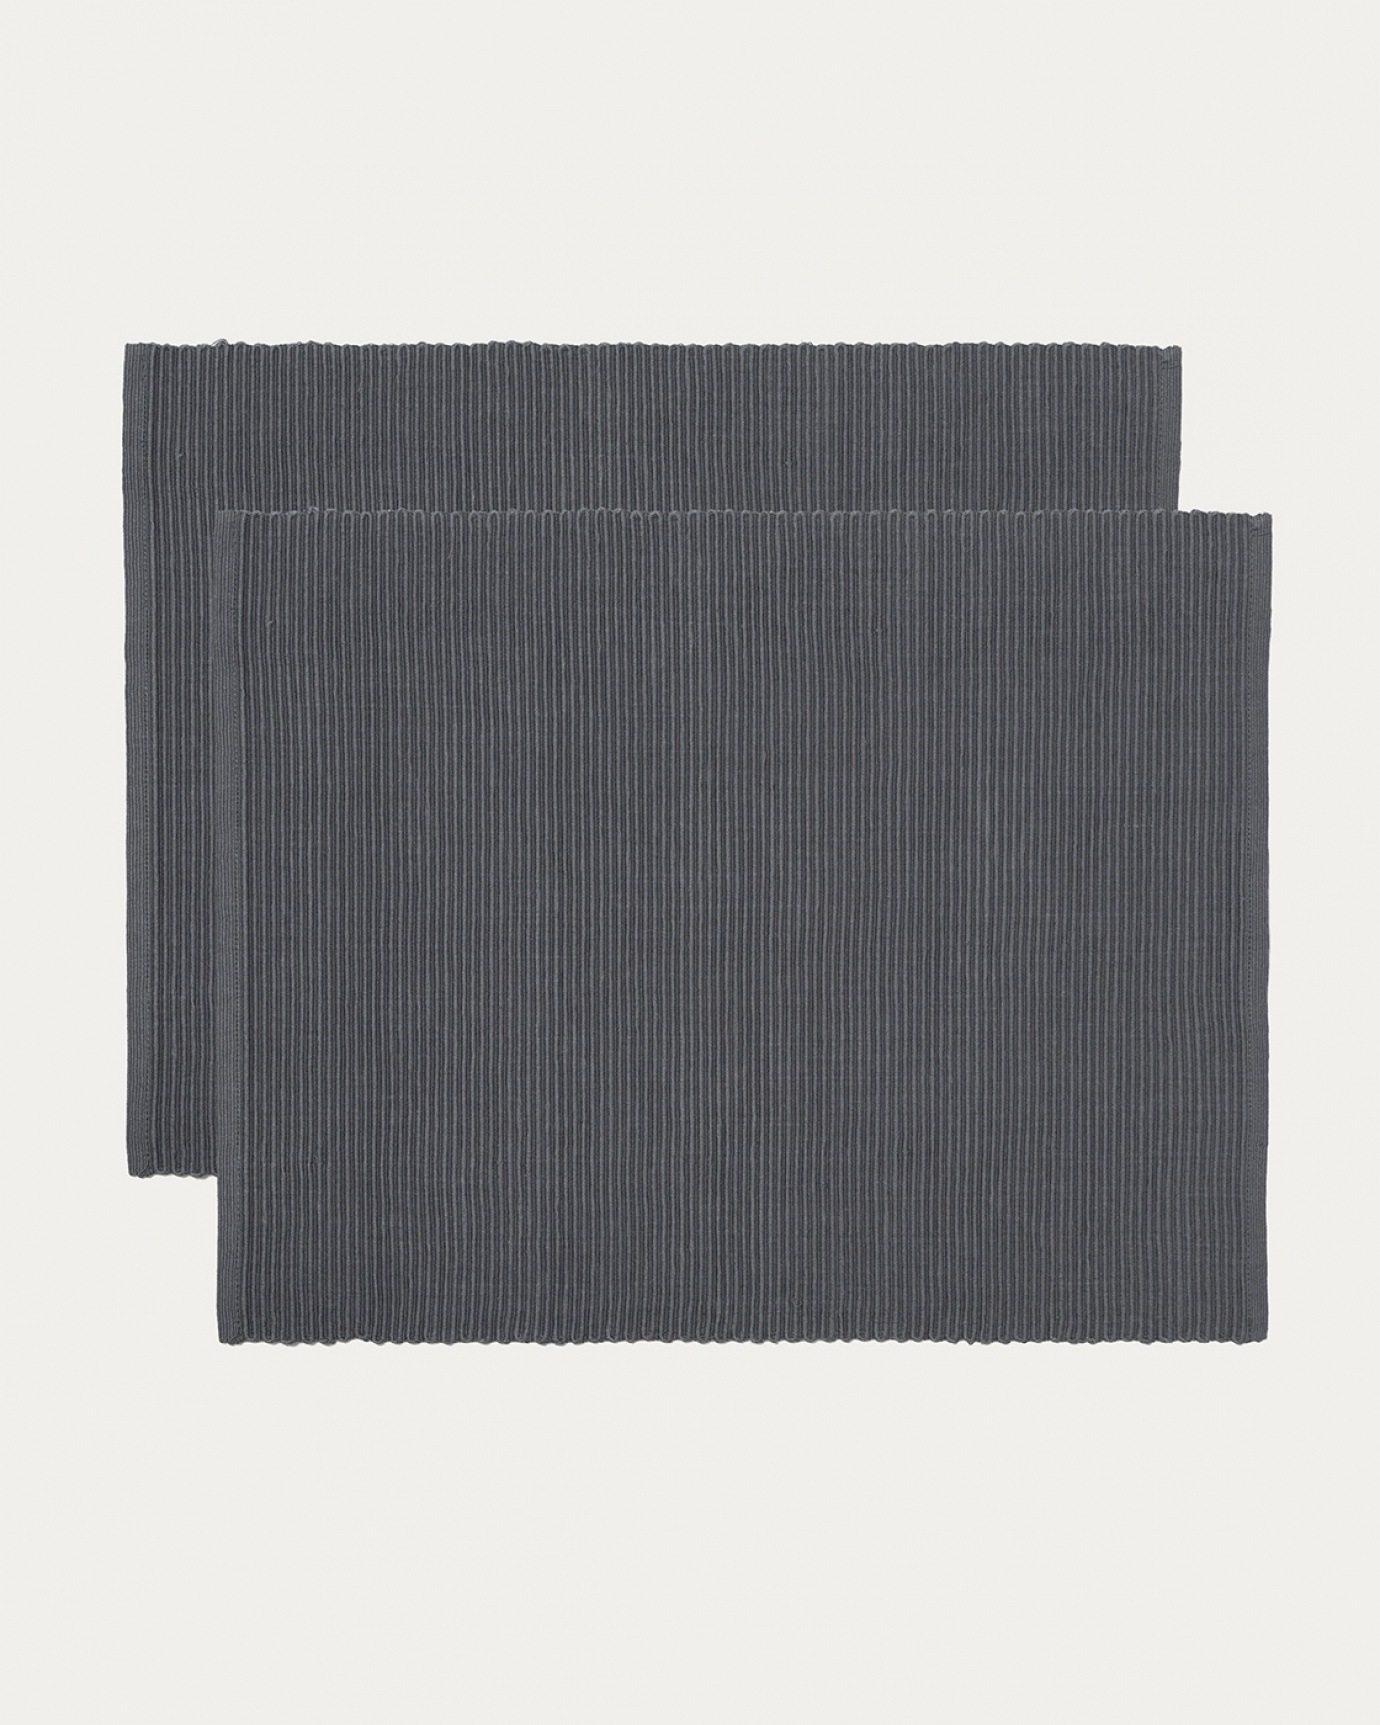 Produktbild granitgrau UNI Tischset aus weicher Baumwolle in Rippenqualität von LINUM DESIGN. Größe 35x46 cm und in 2er-Pack verkauft.